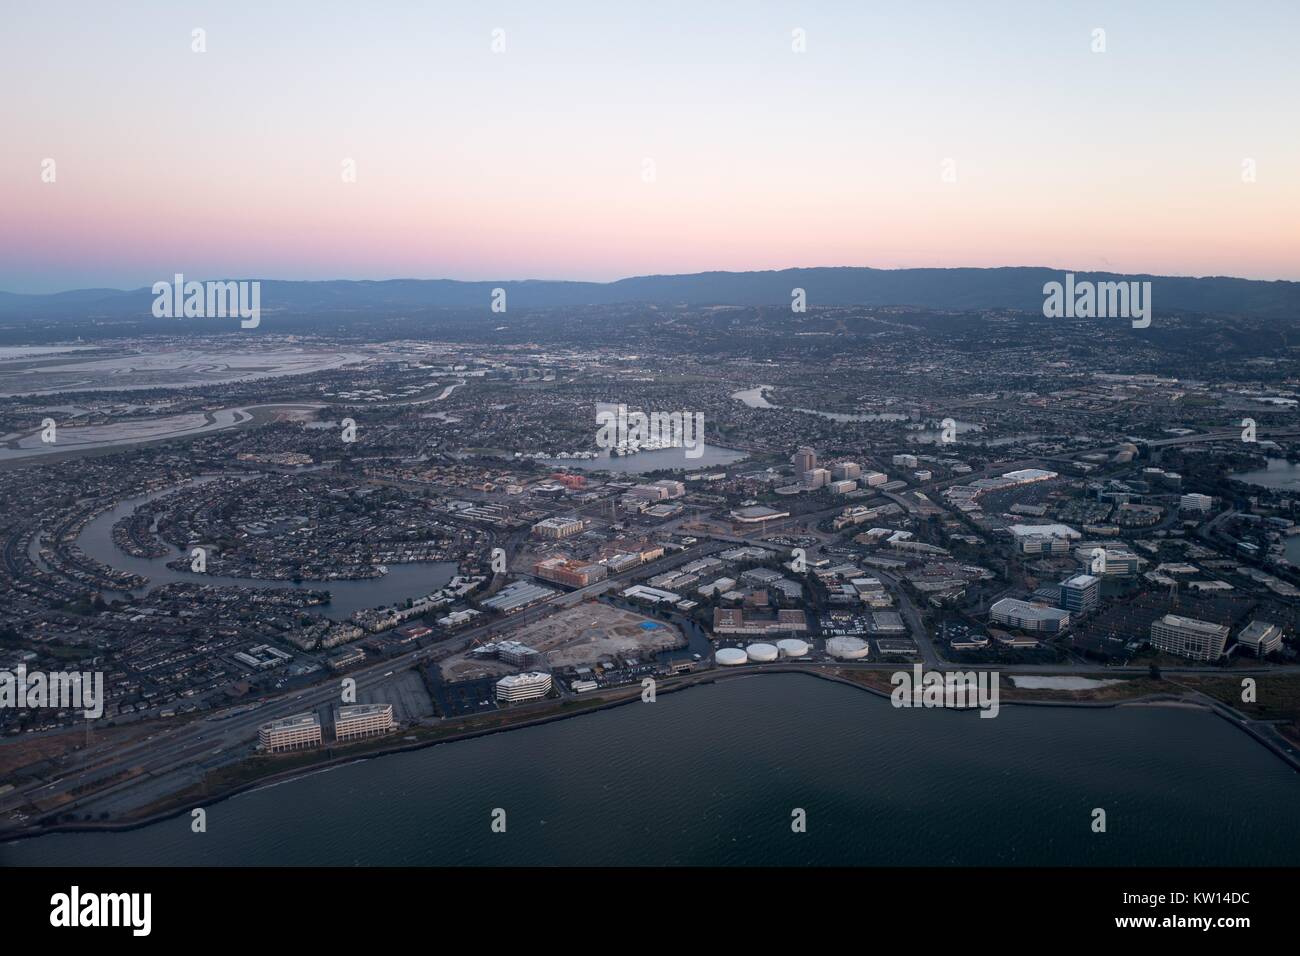 Vue aérienne de la Silicon Valley, au crépuscule, avec une partie de la San Mateo/Hayward Bridge visible, ainsi que de favoriser la ville, y compris la Californie, siège de Gilead Sciences, Visa, et Conversica, Californie, juillet 2016. Banque D'Images